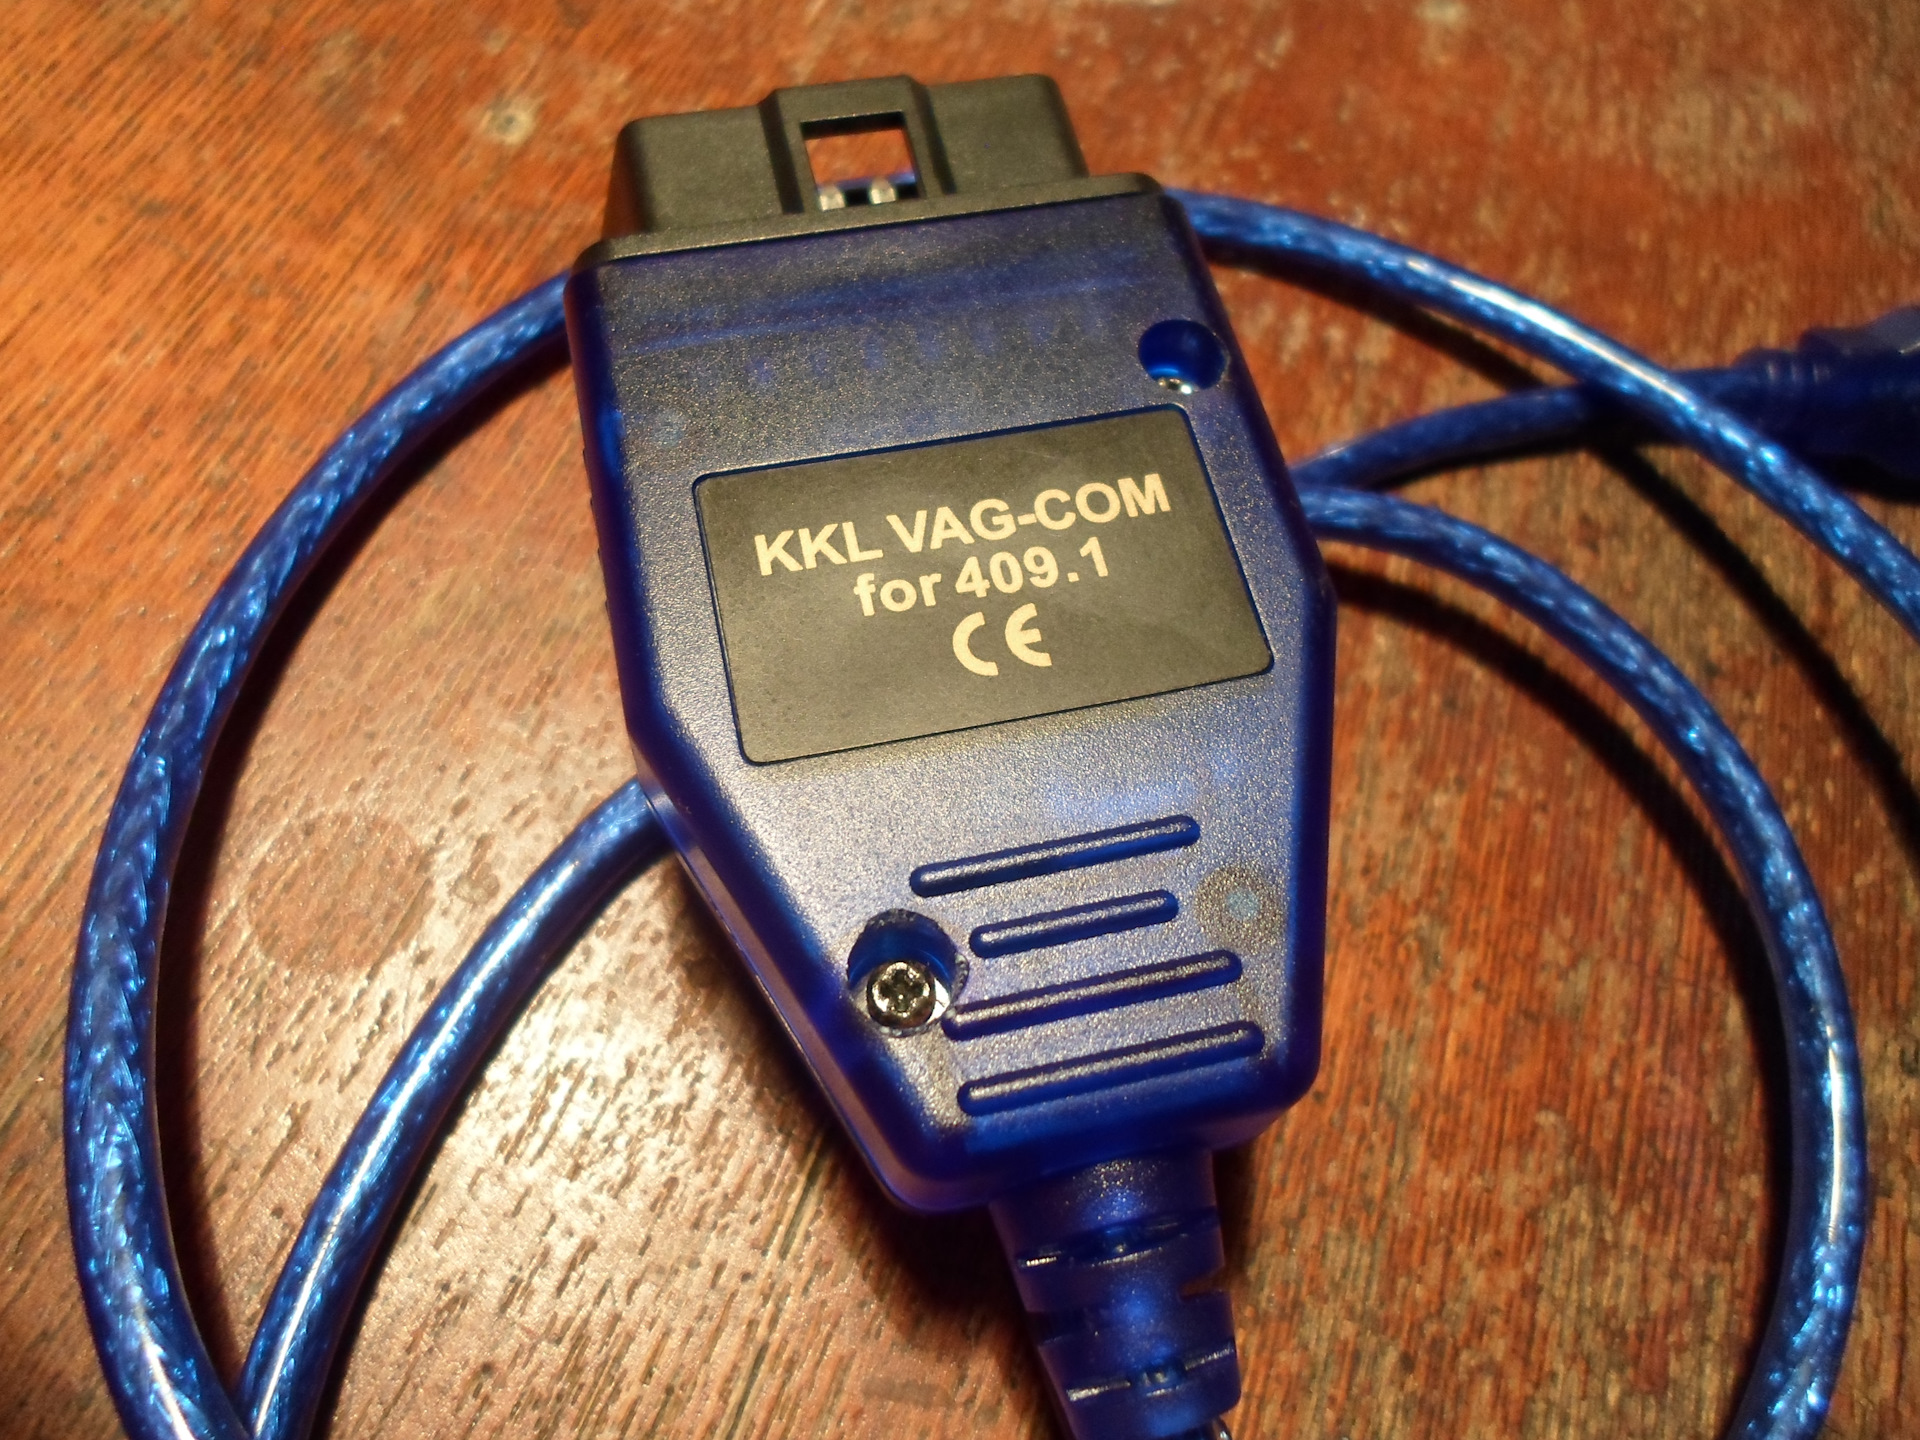 Vag com k line. VAG-com 409.1-USB KKL K-line. VAG com 409.1 k-line KKL. VAG com 409.2 KKL. Адаптер k-line на FTDI.